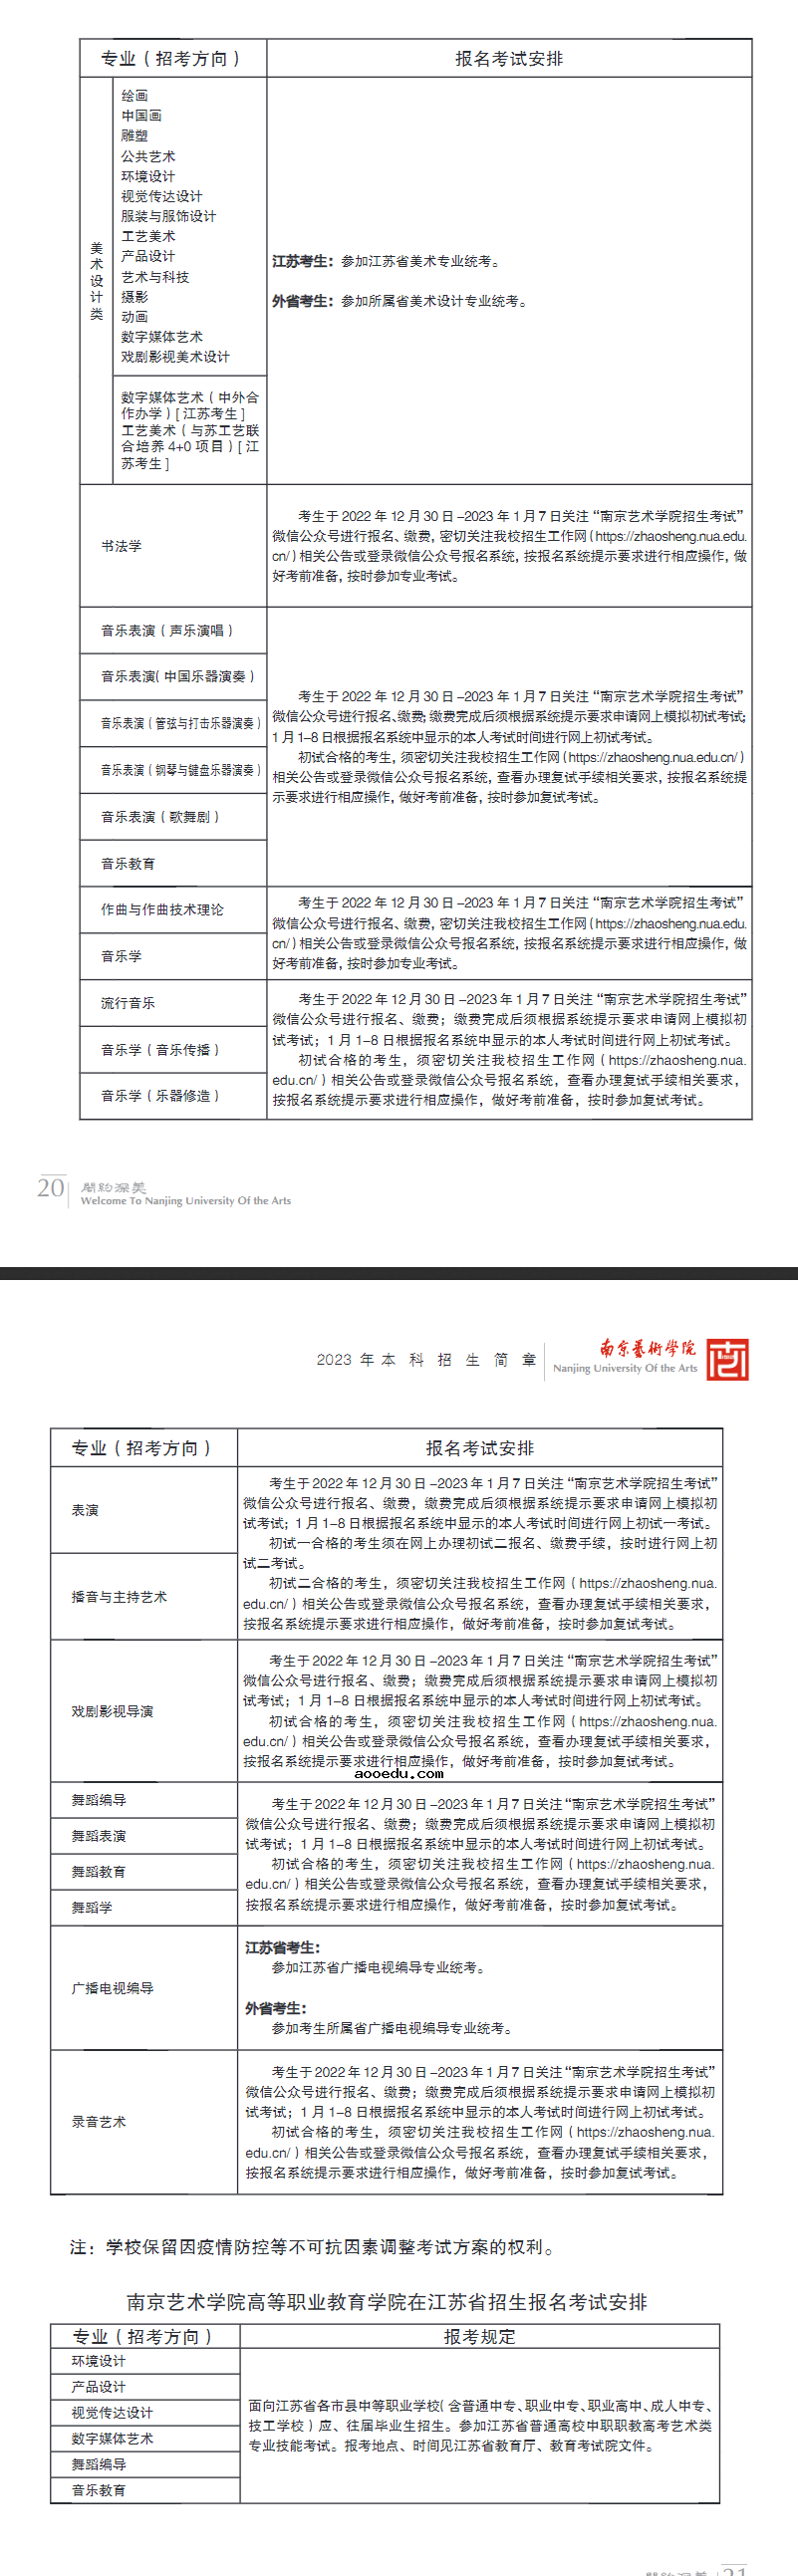 2023南京艺术学院校考时间安排 有哪些考试内容